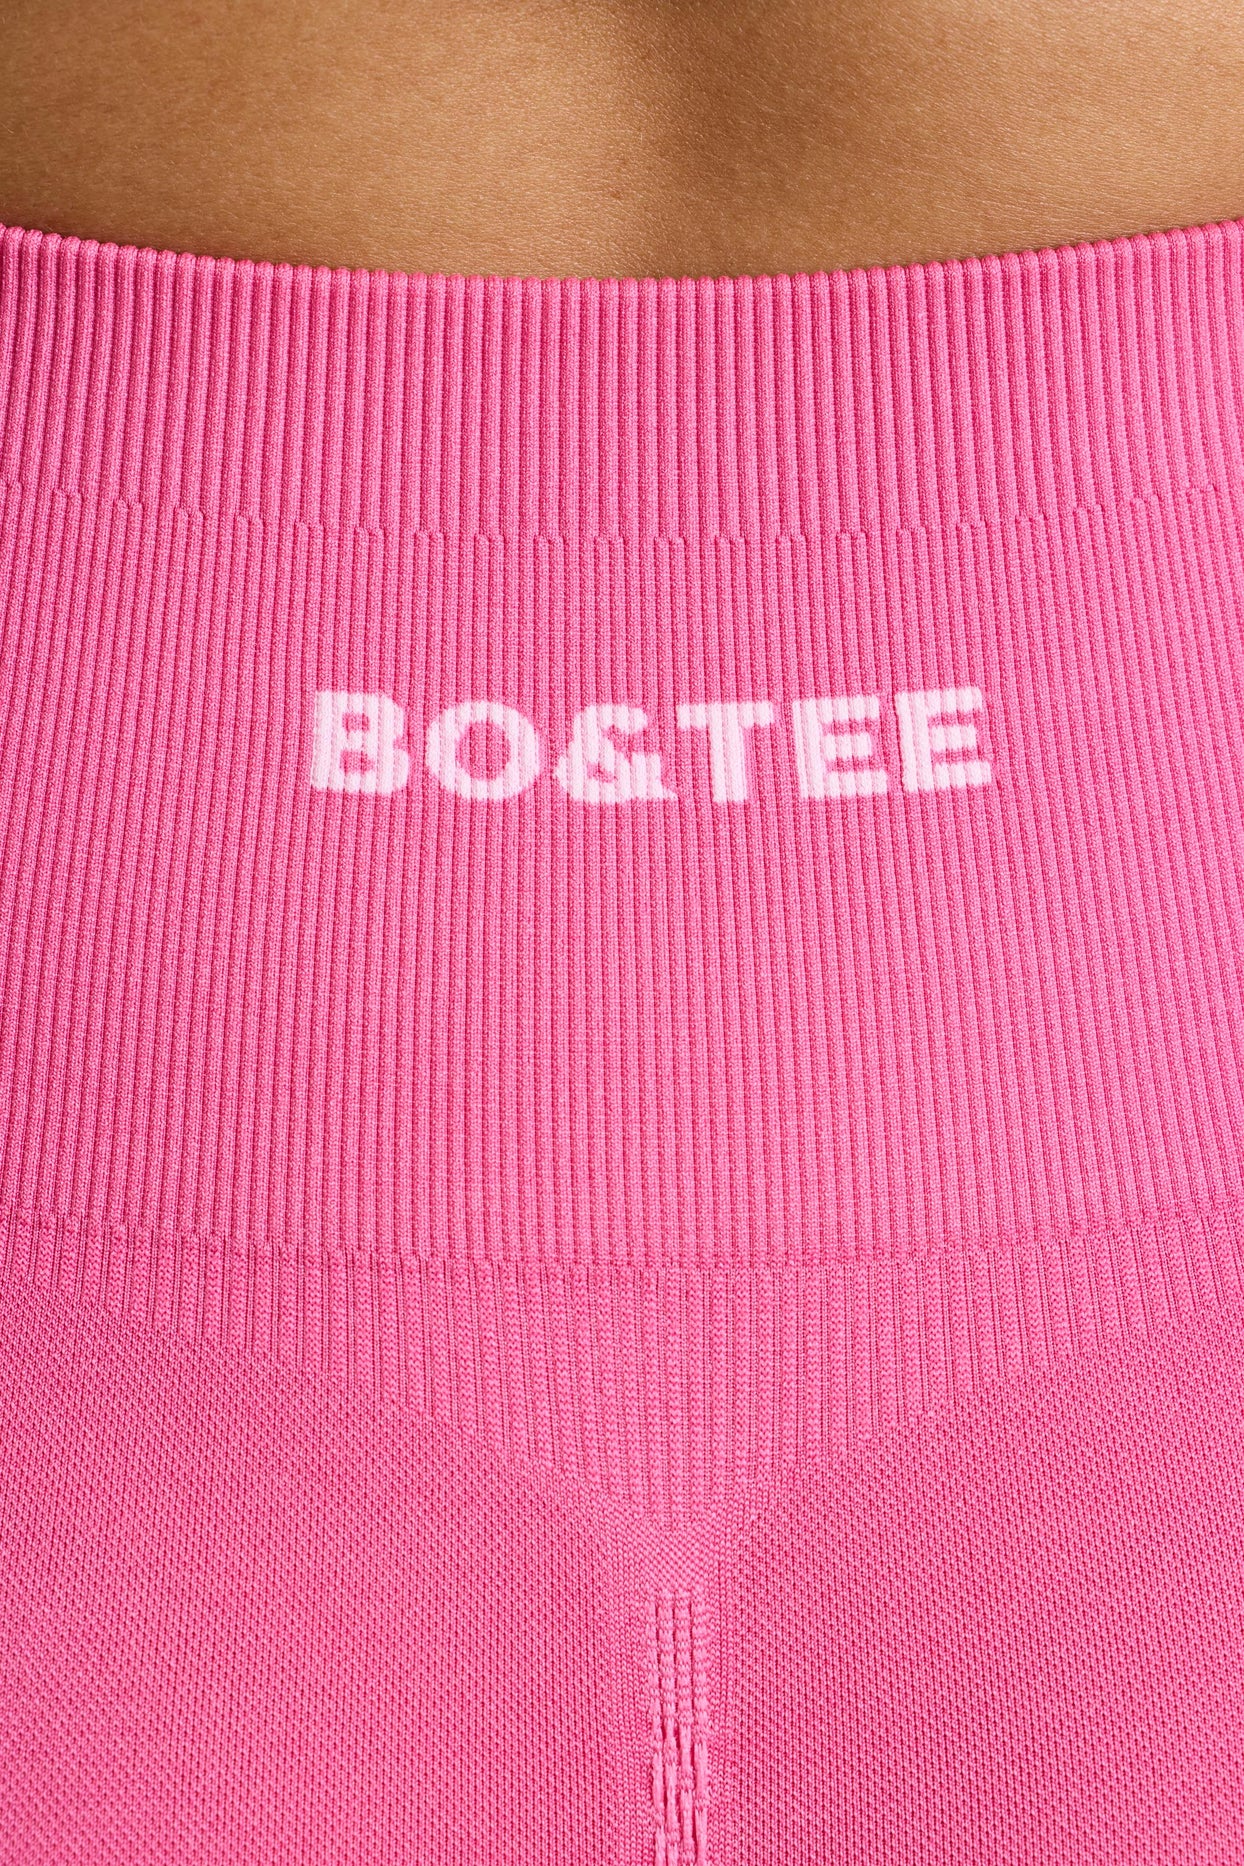 Mini shorts luxuosos definidos de cintura alta em rosa choque